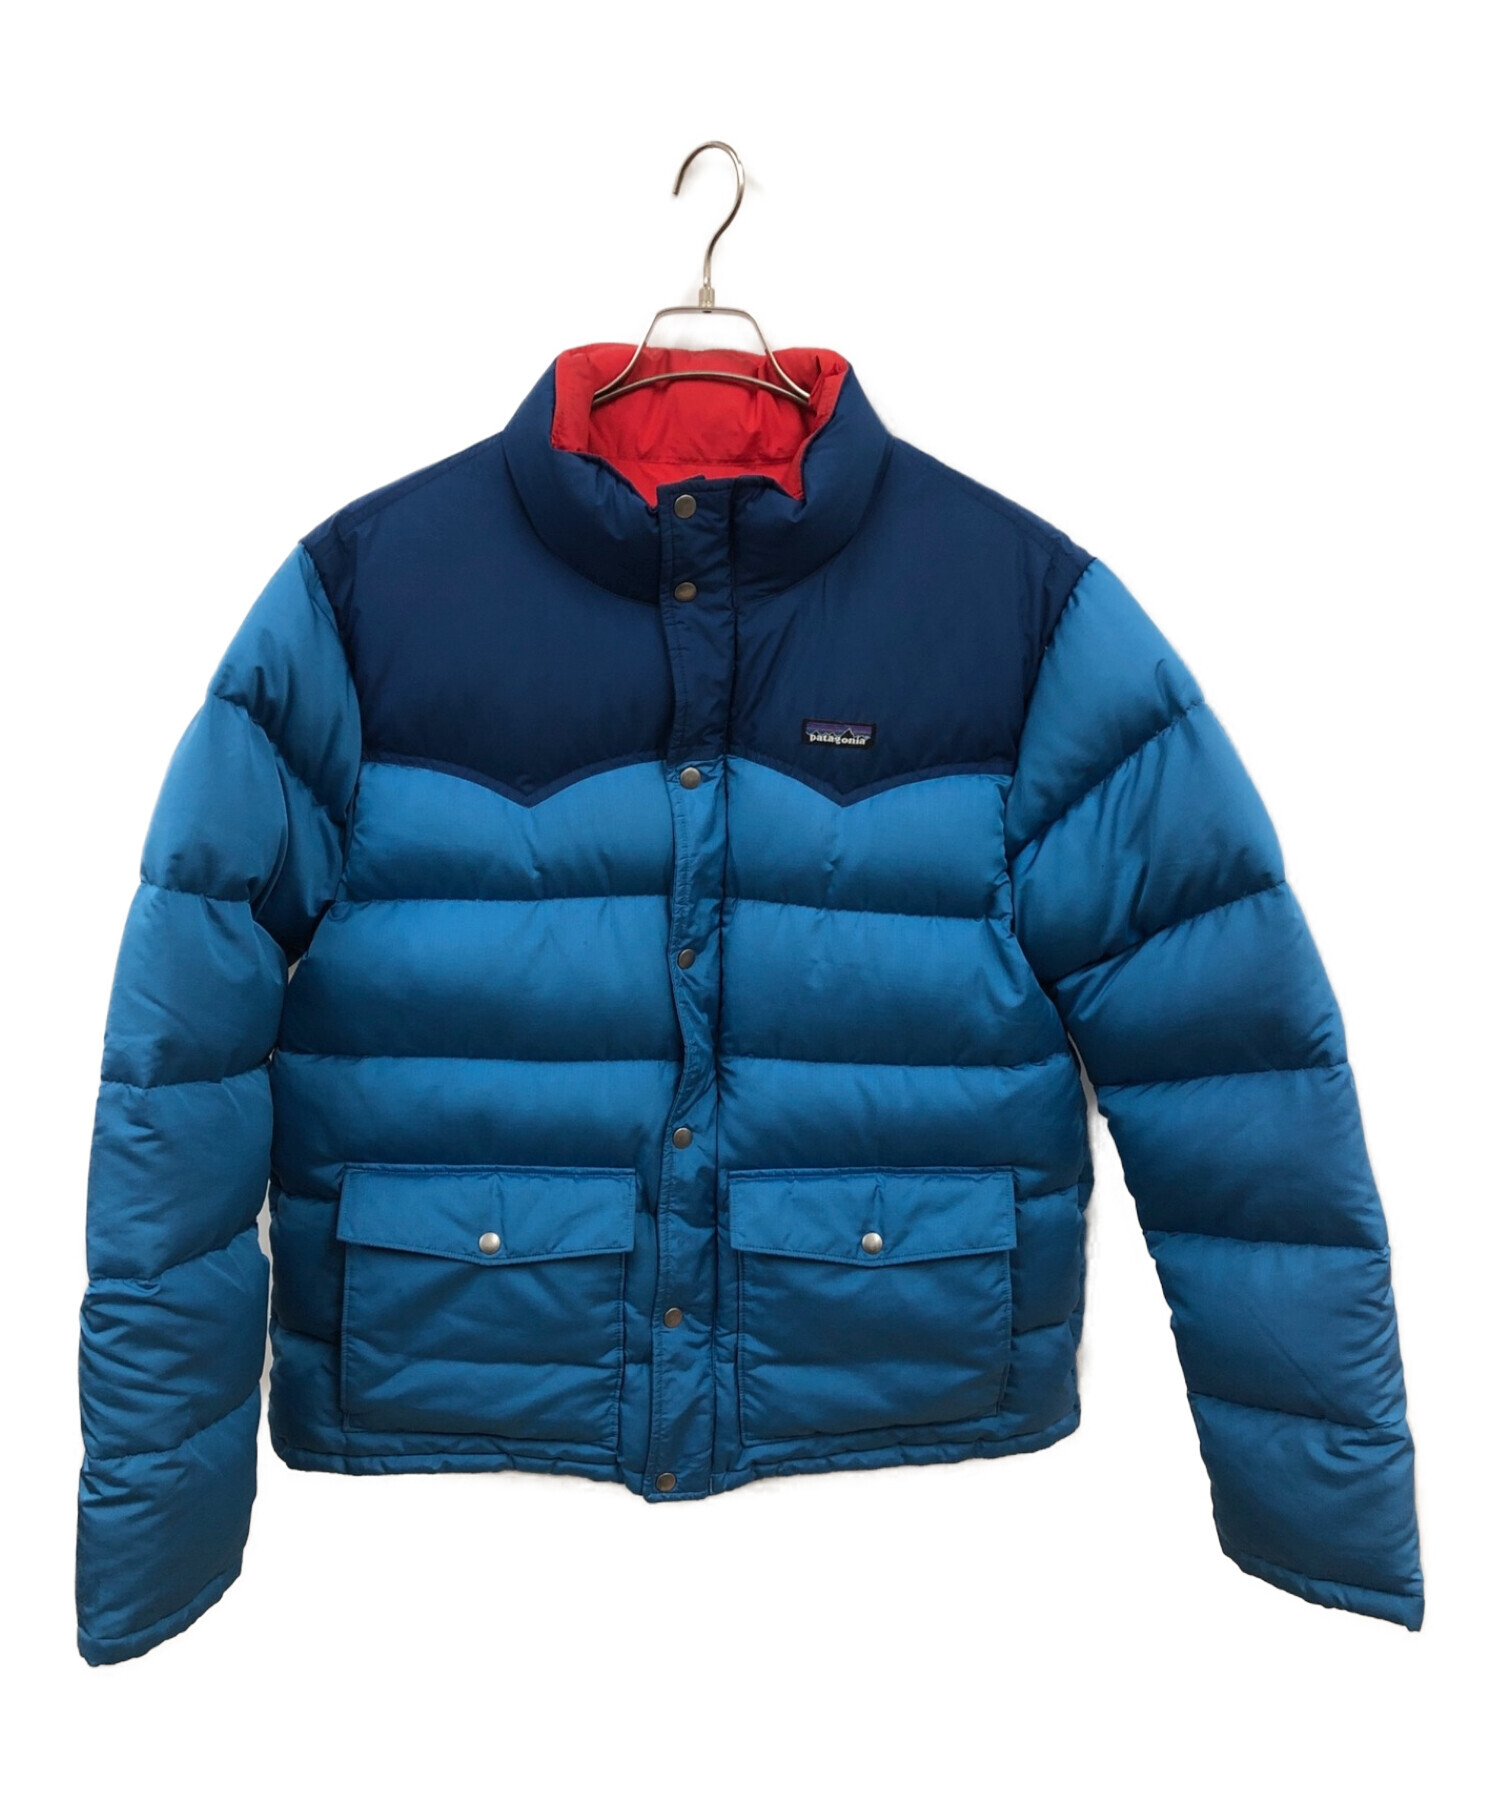 Patagonia (パタゴニア) スリングショットダウンジャケット ブルー サイズ:L